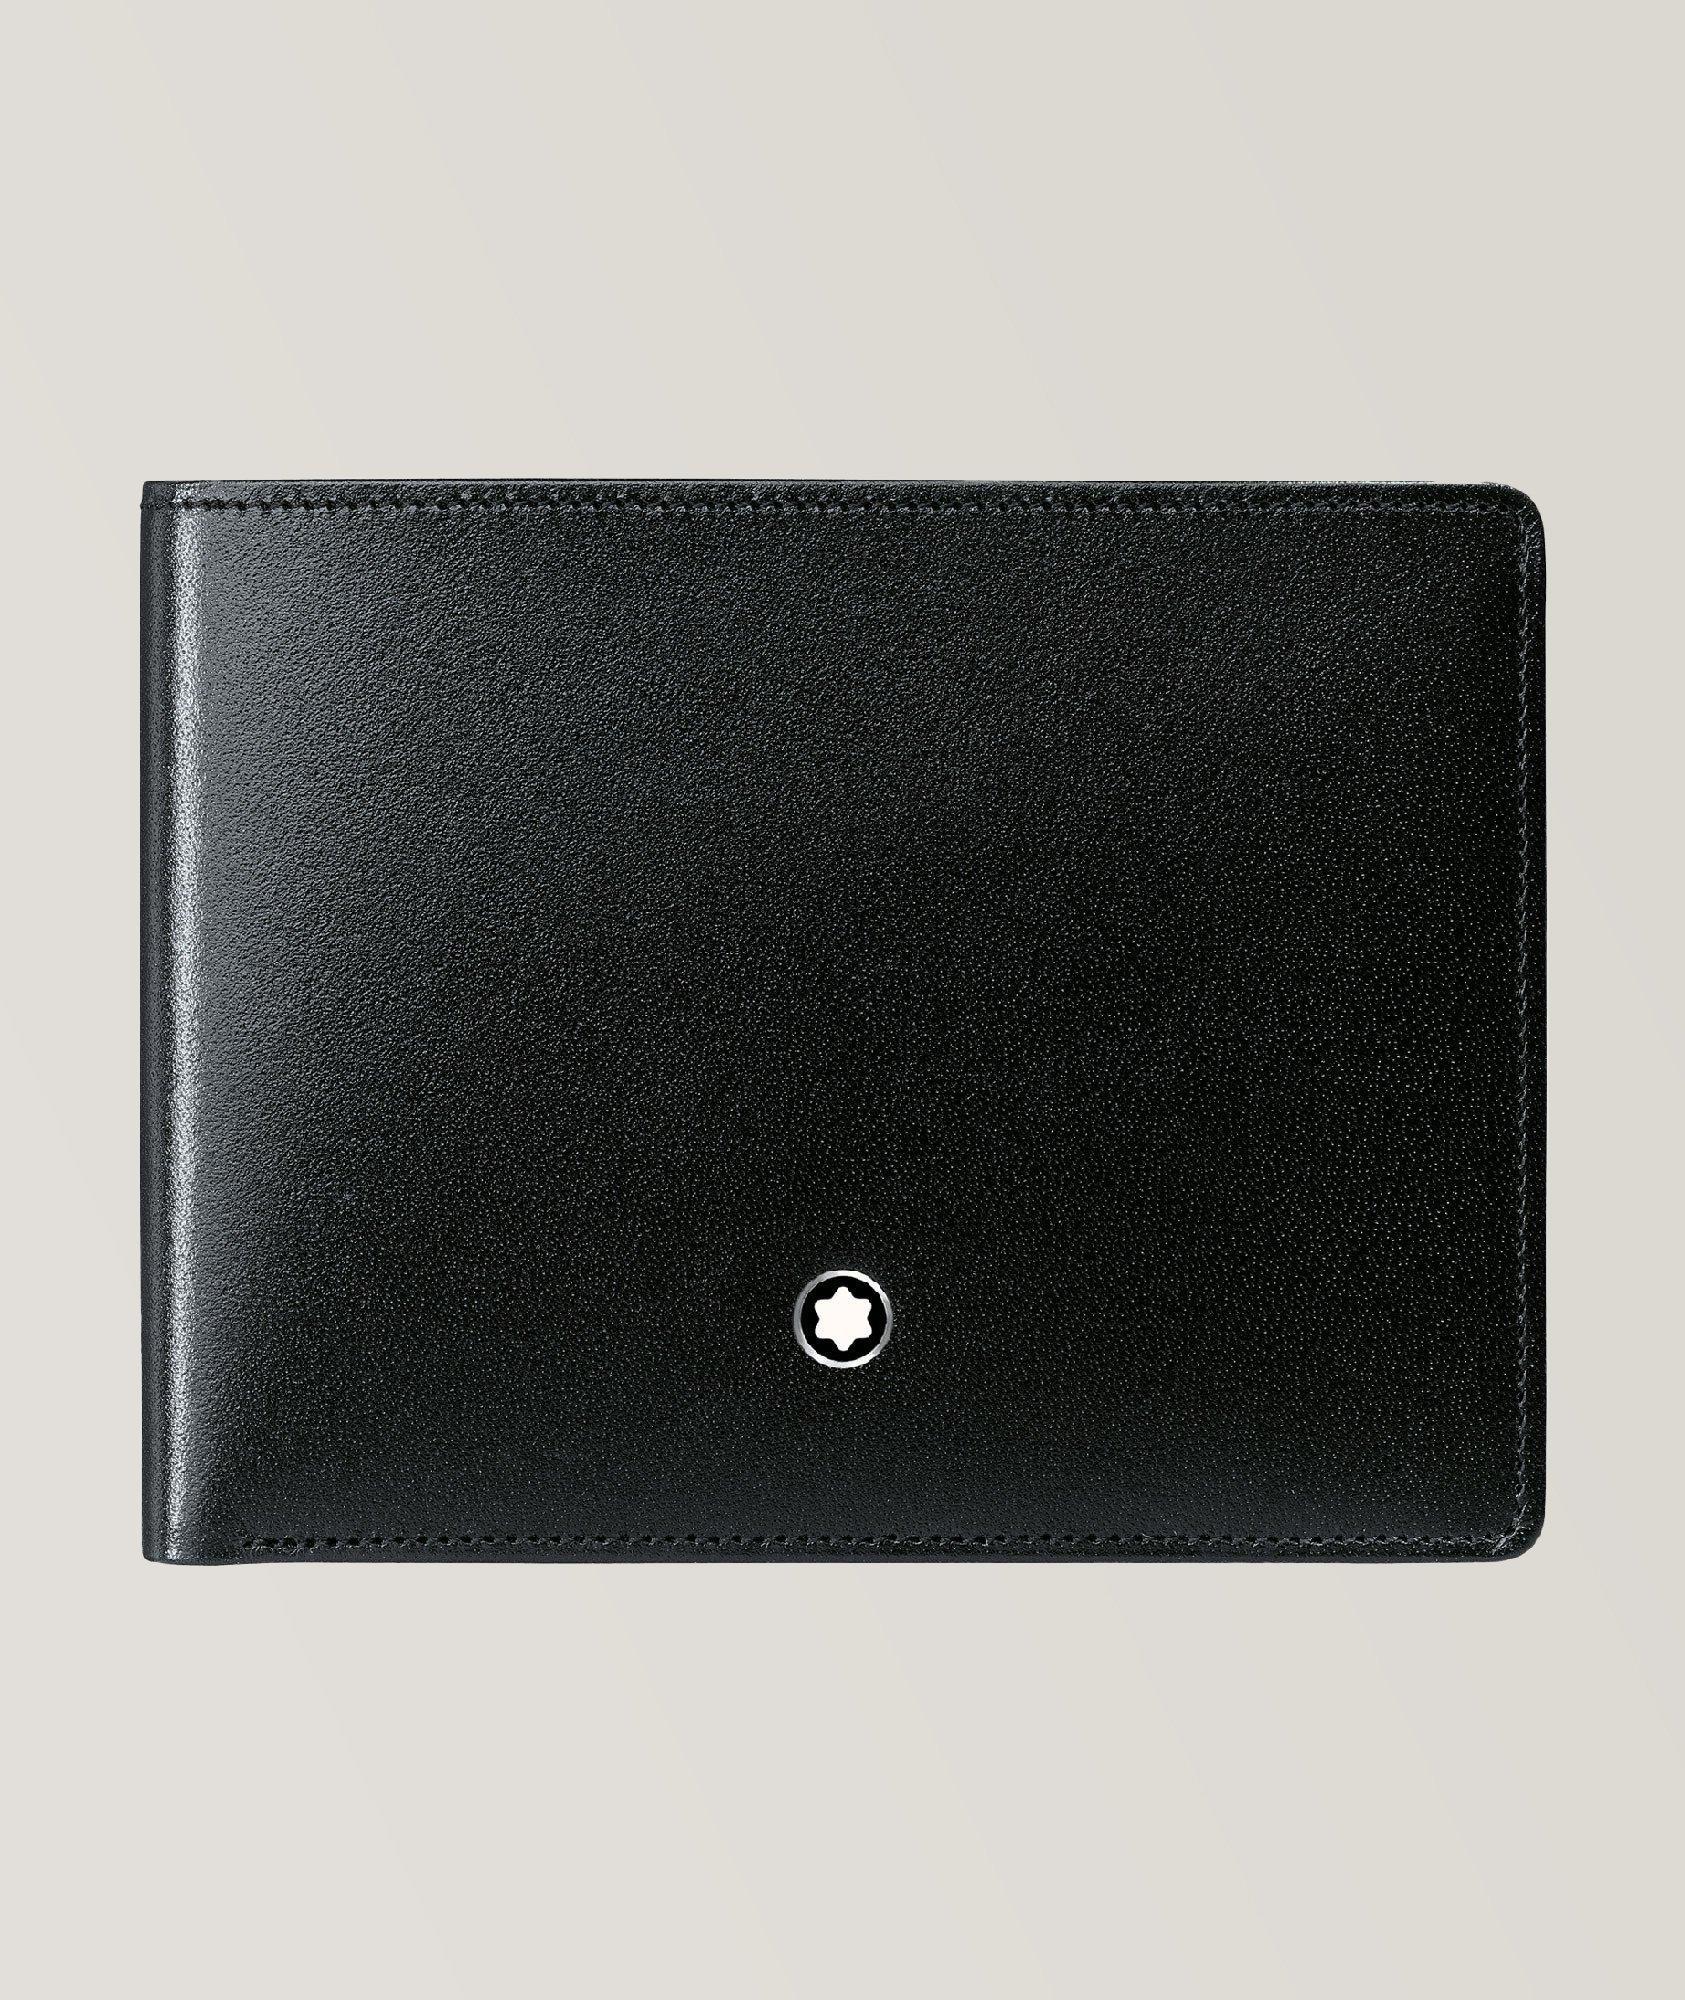 Meisterstück Leather Billfold Wallet image 0